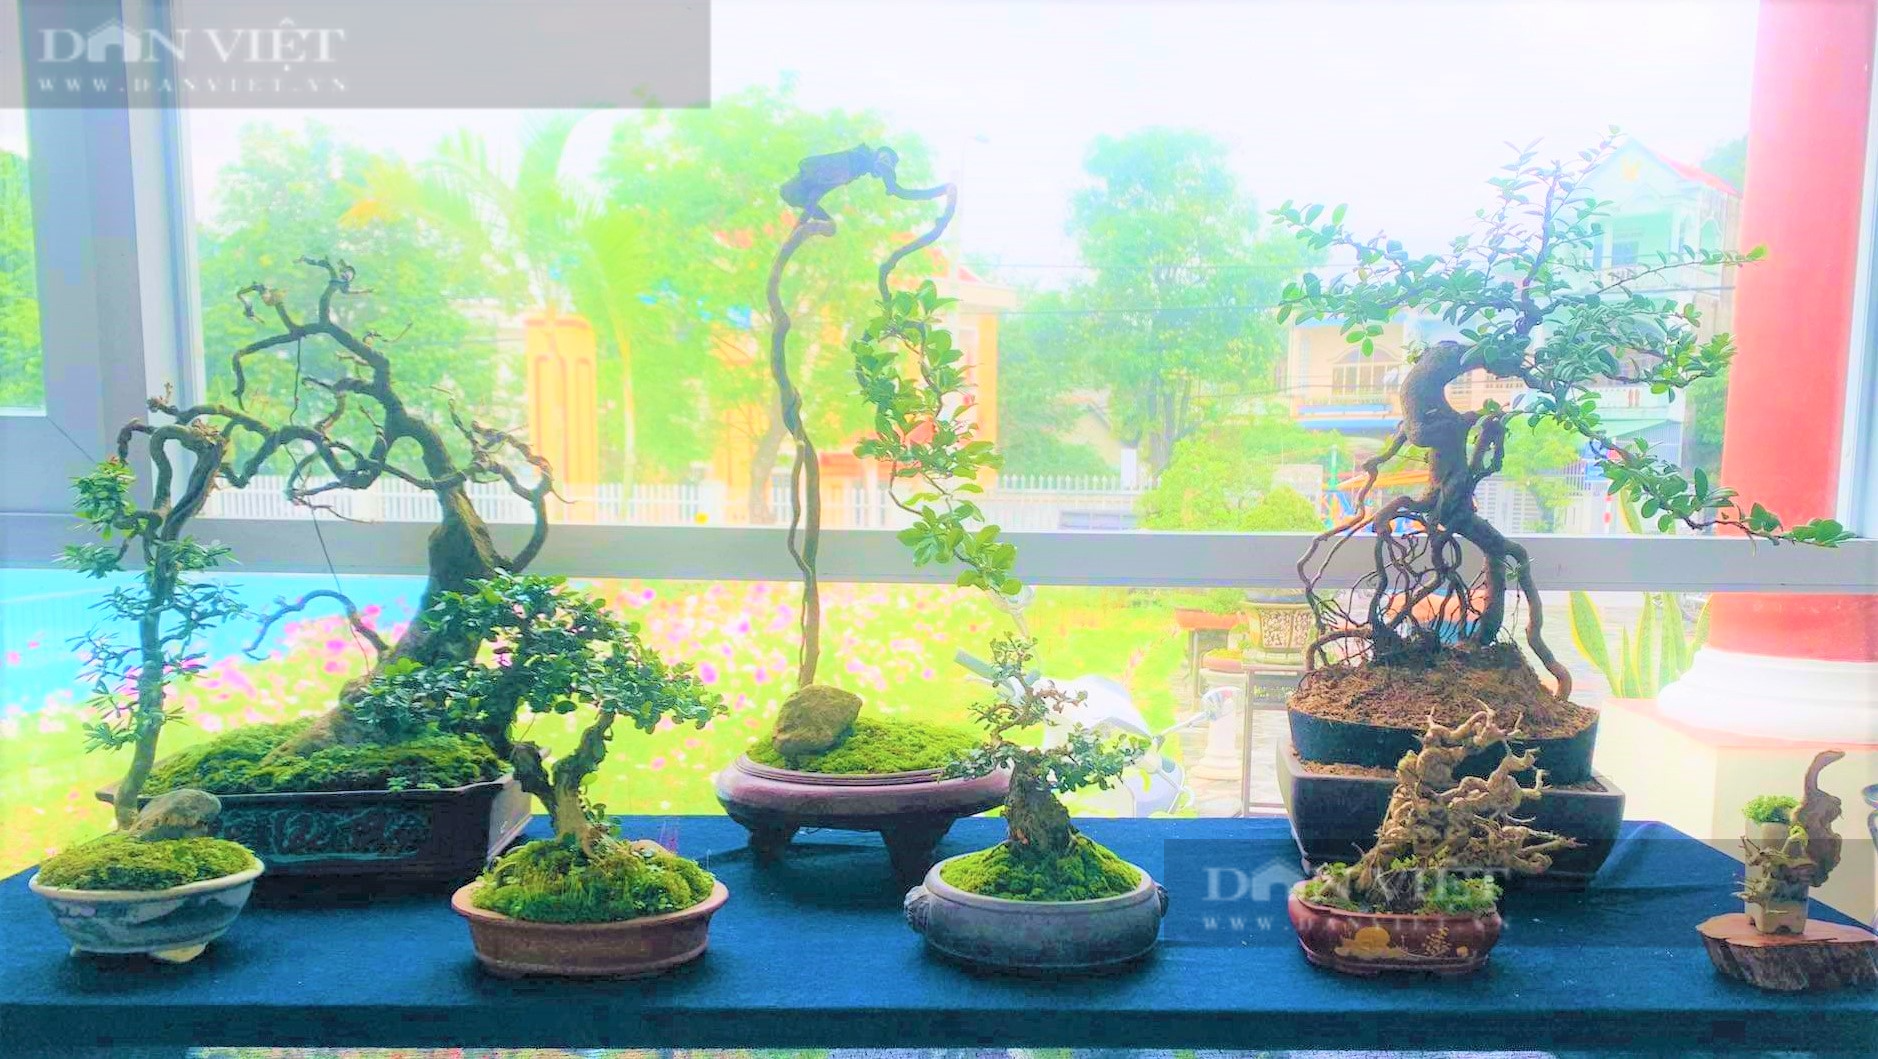 Phú Yên: “Tuyệt phẩm” bonsai mini đắt đỏ dành cho nhà giàu dịp Tết - Ảnh 3.